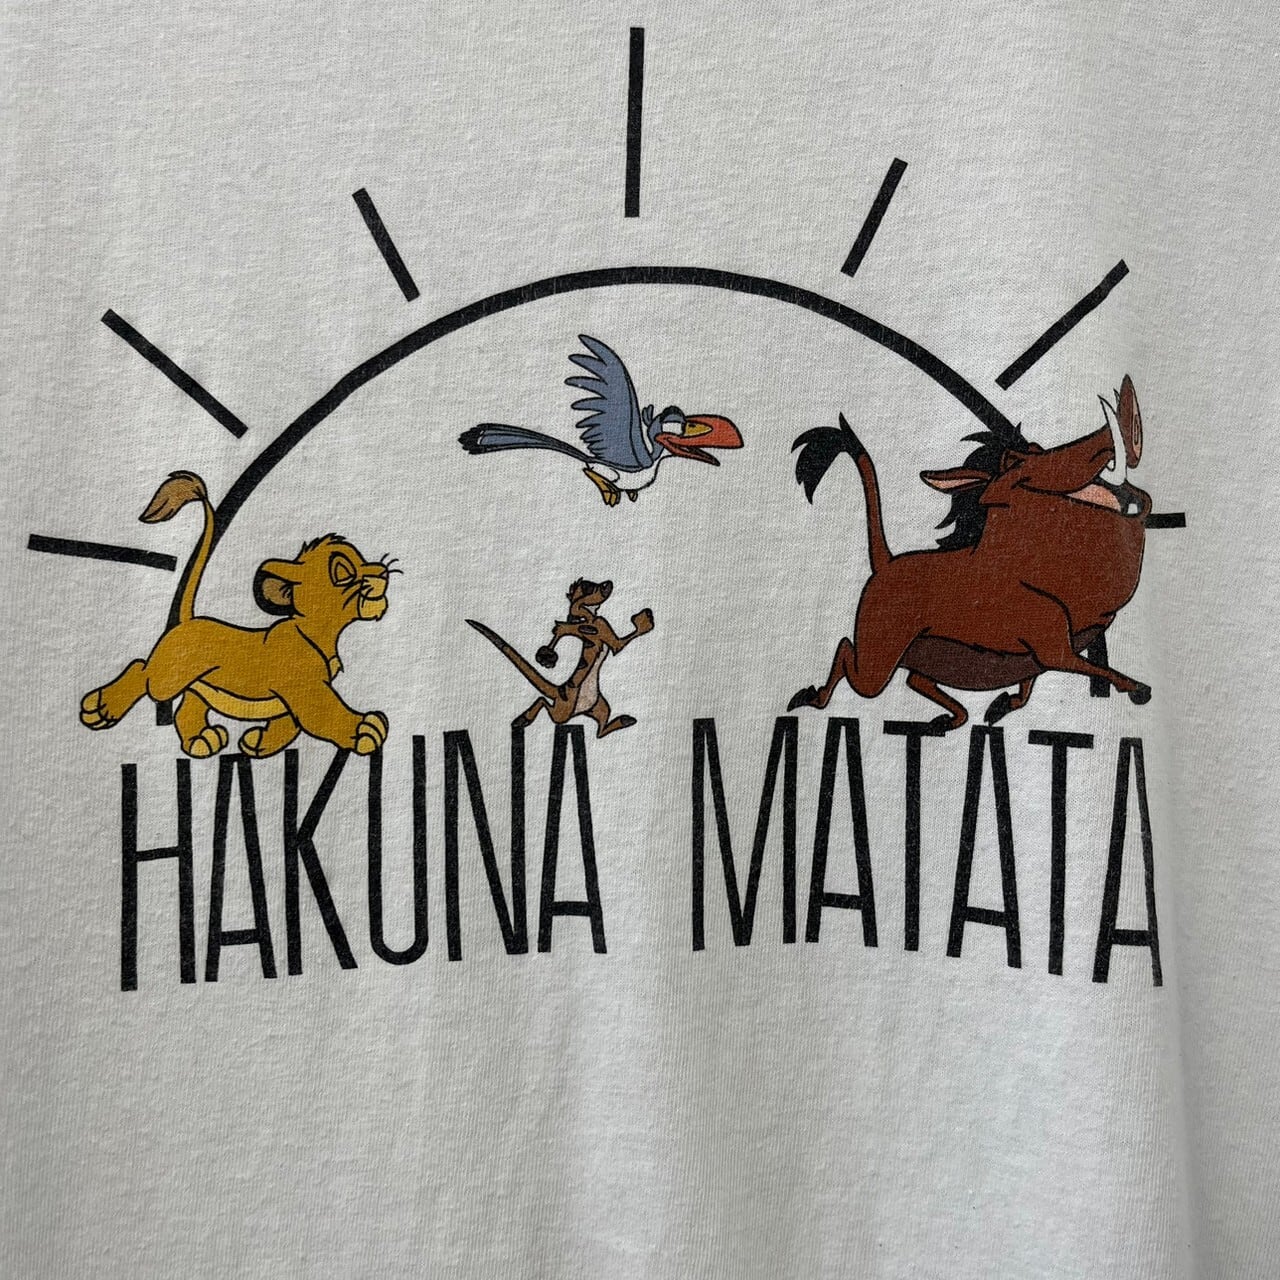 ハクナマタタ ライオンキング キャラクター系 半袖Tシャツ ディズニー